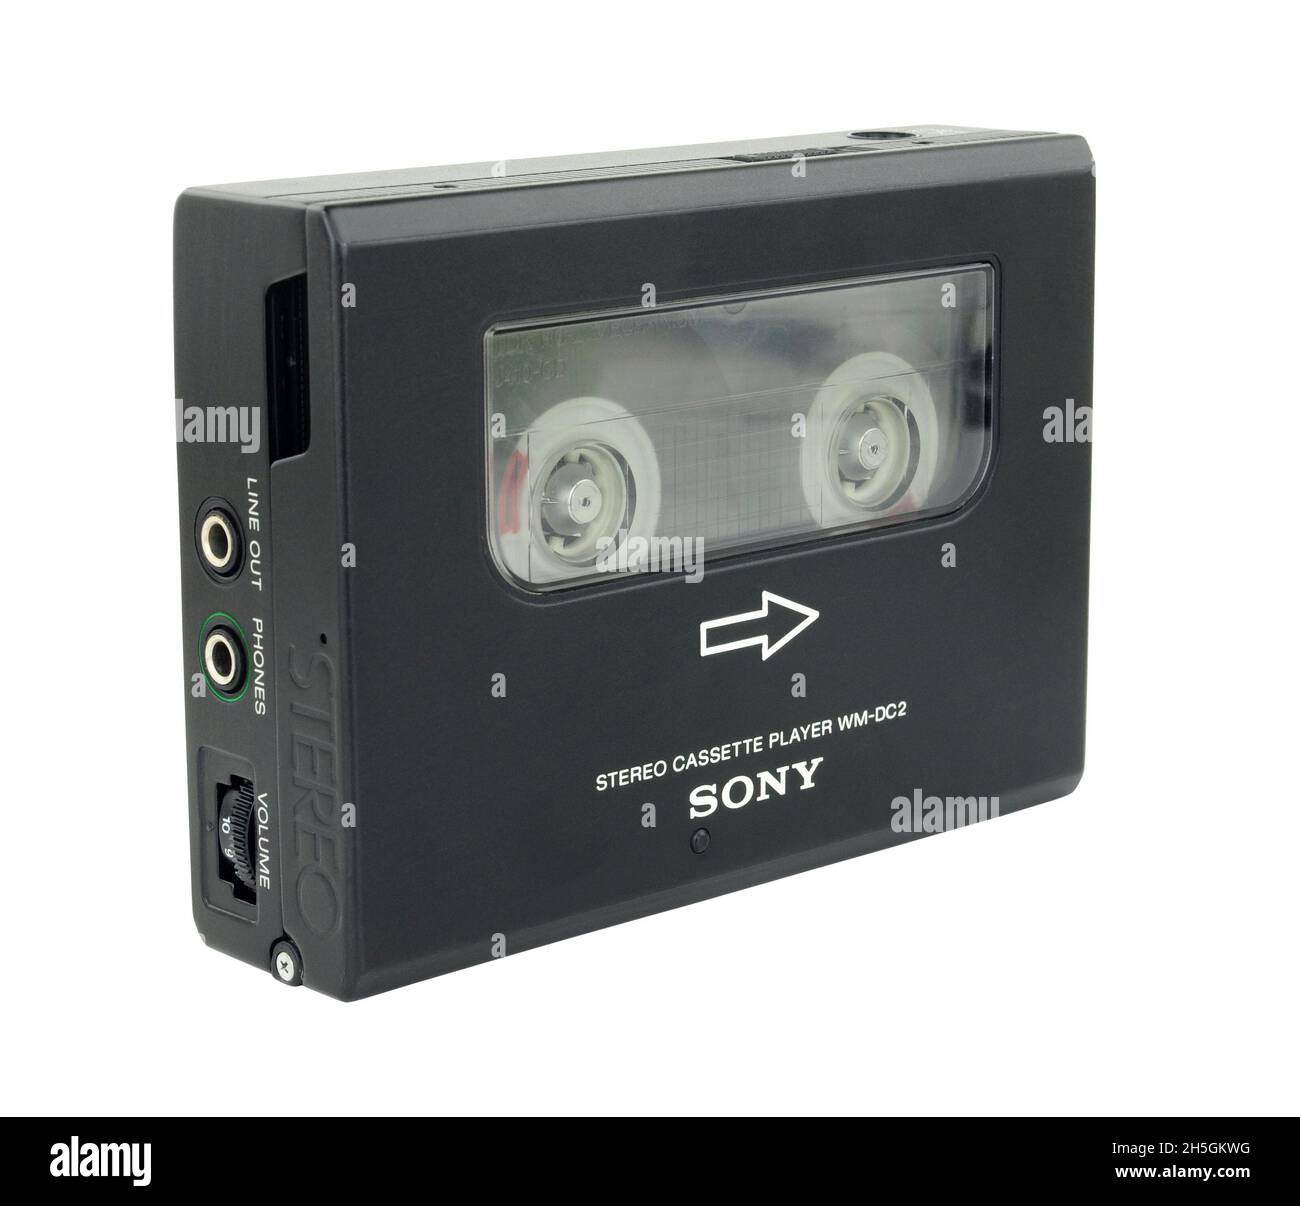 El reproductor de casetes personales estéreo WM DC 2 de Sony WALKMAN®, introducido originalmente en 1984, se considera uno de los casetes portátiles de mayor calidad Foto de stock